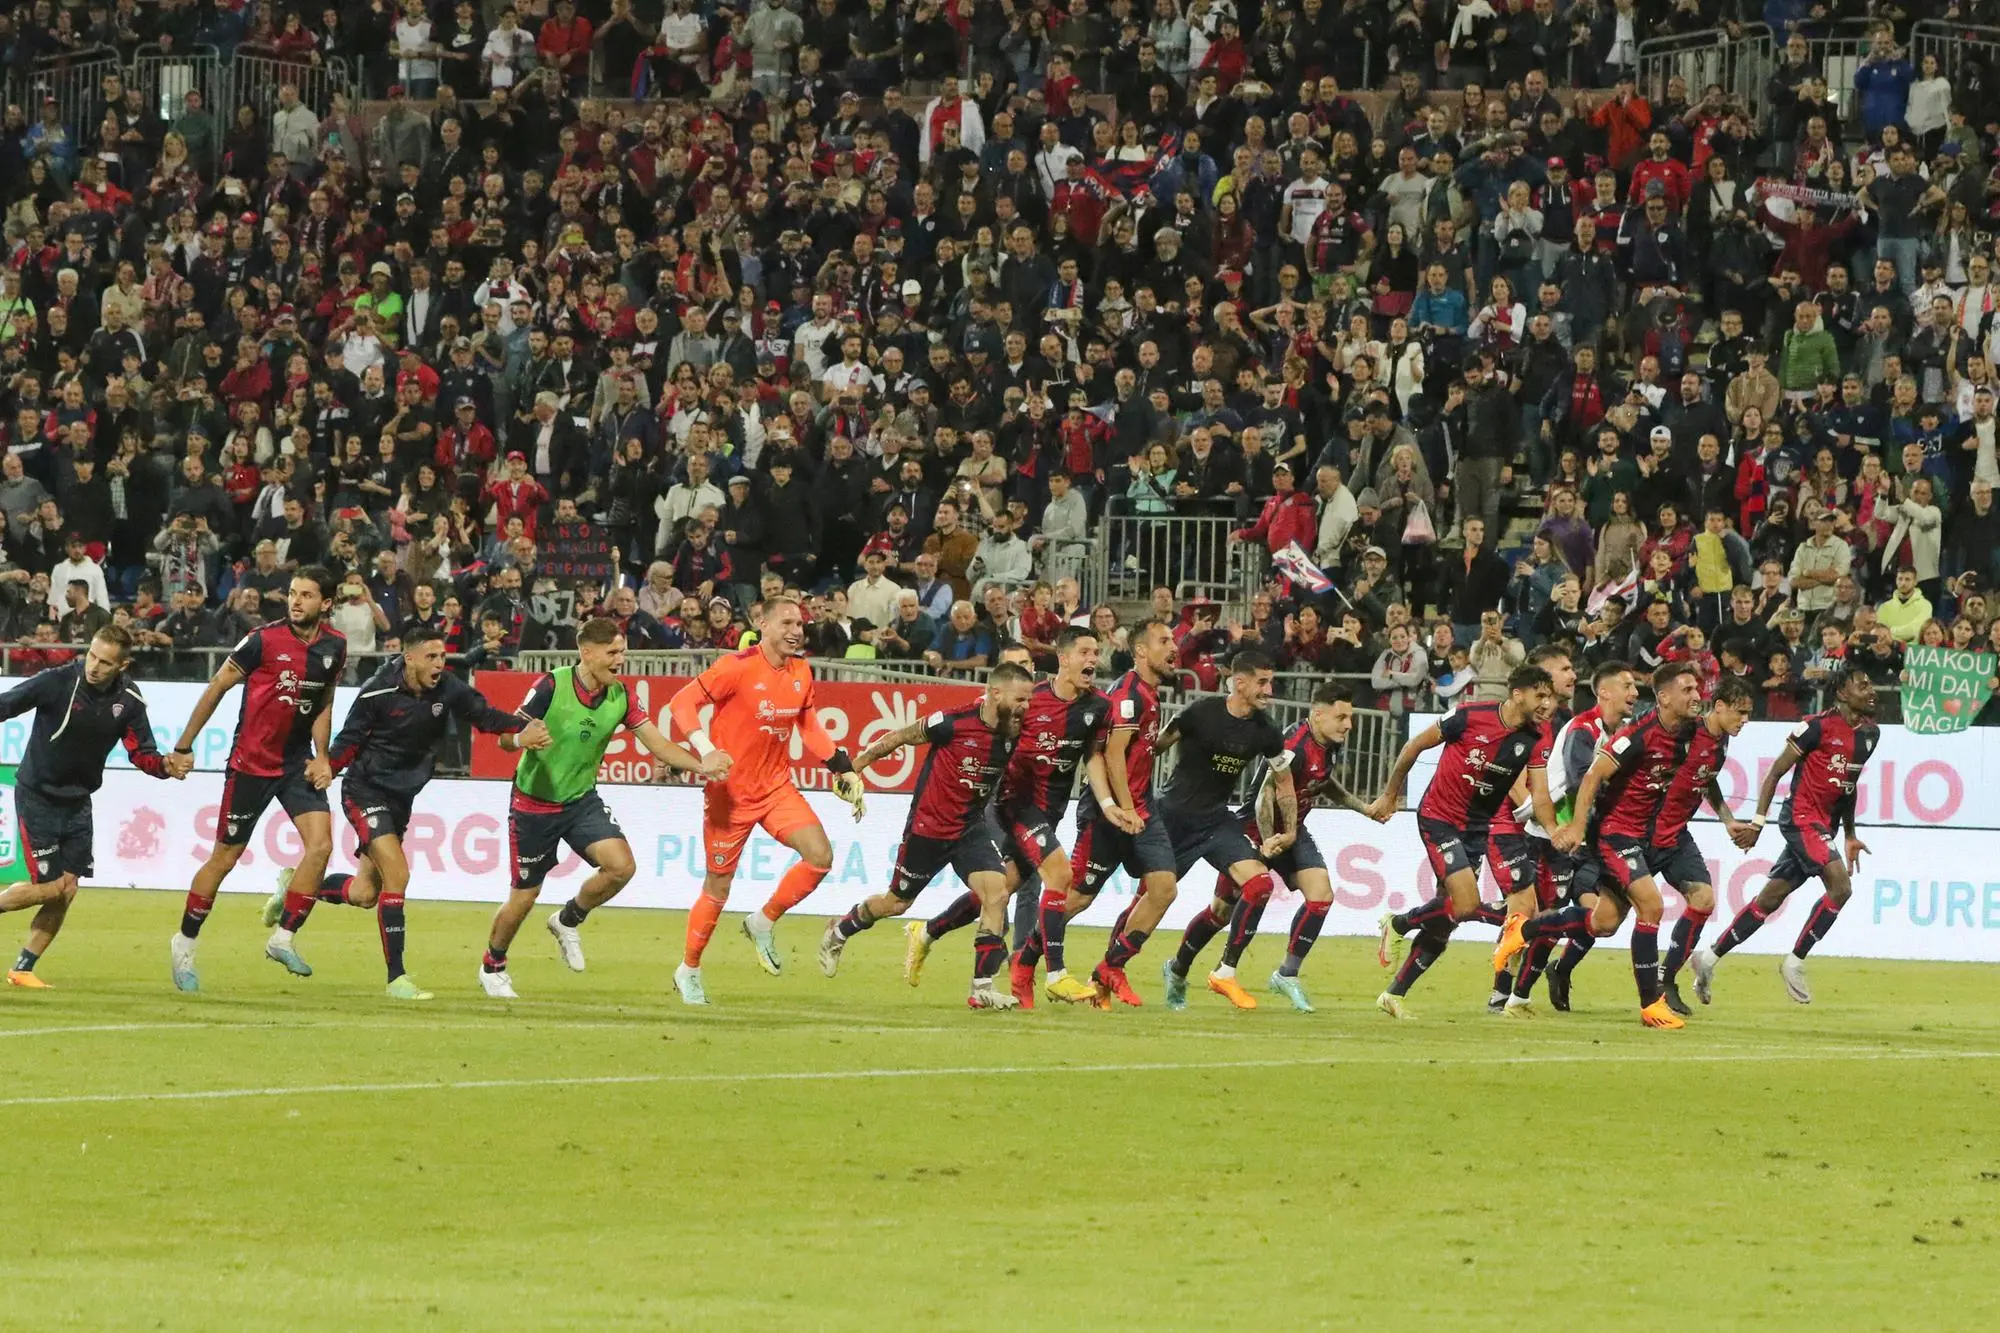 Il giocatori del Cagliari salutano i tifosi dopo una vittoria casalinga